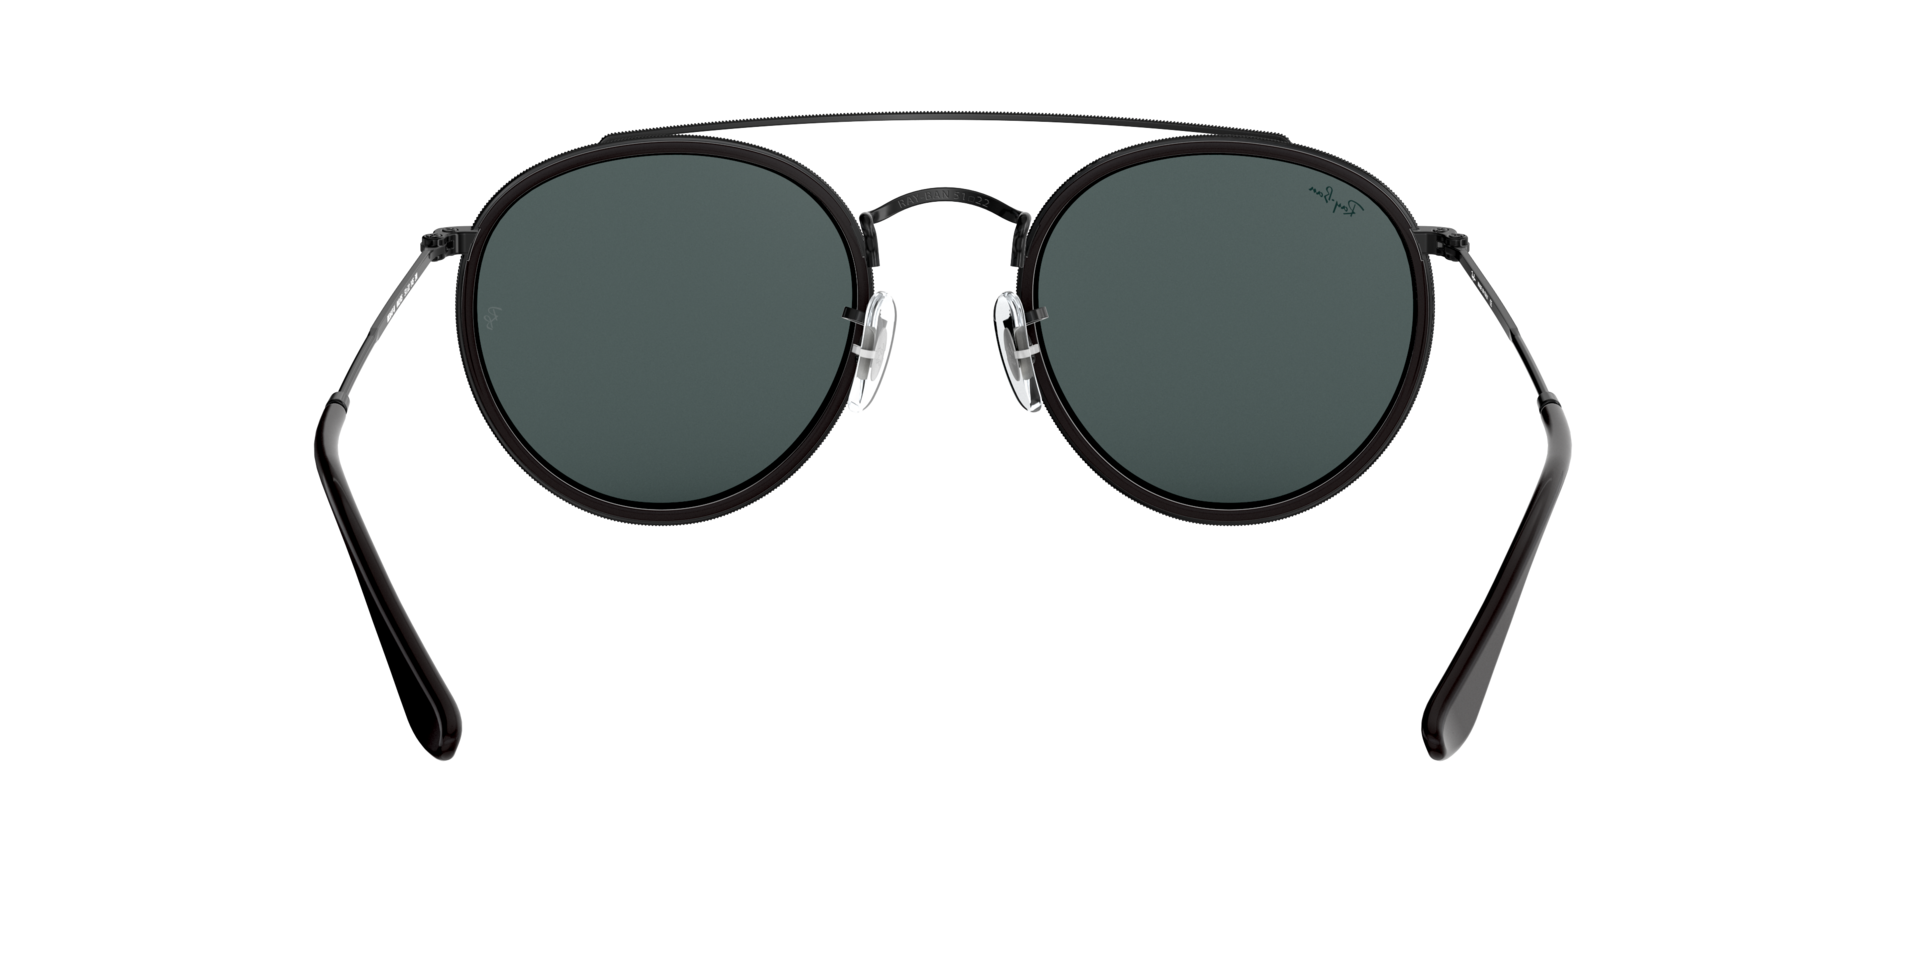 Buy Ray-Ban Round Double Bridge Sunglasses Online.